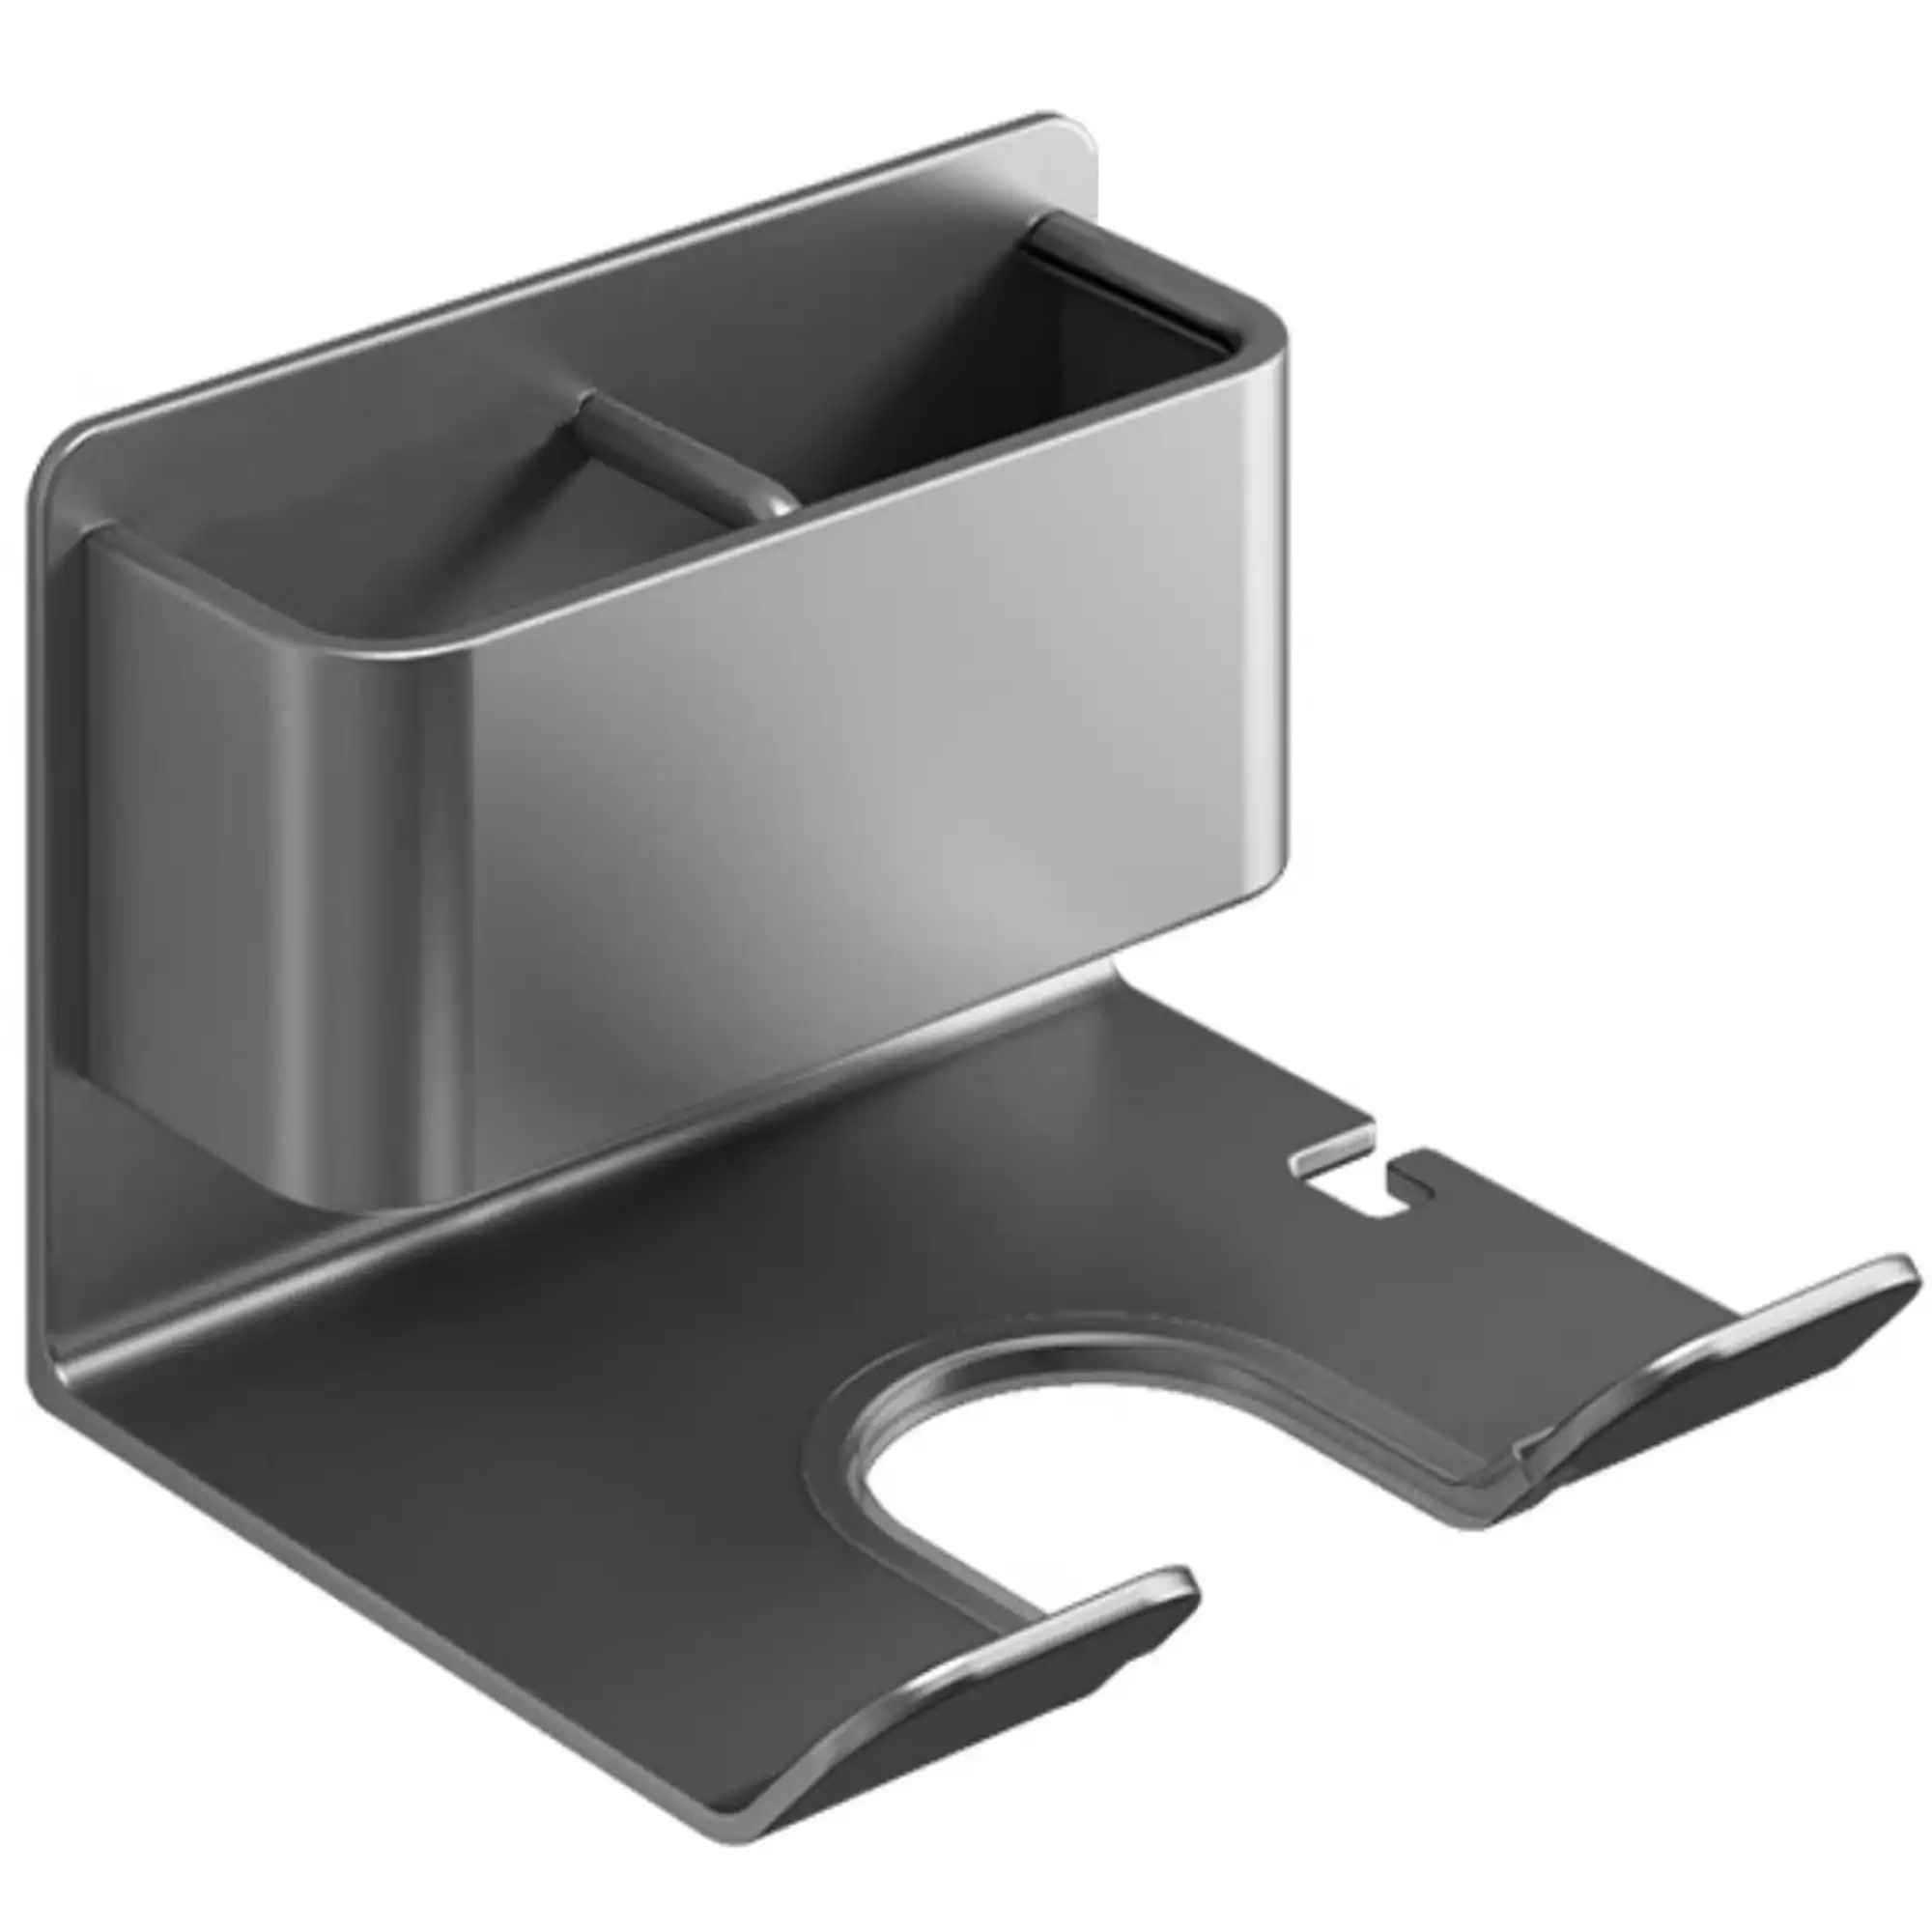 Hair Dryer Holder Caddy Aluminium Alloy Bathroom Storage Shelf Rust Free Wall Mounted - Carbon Grey